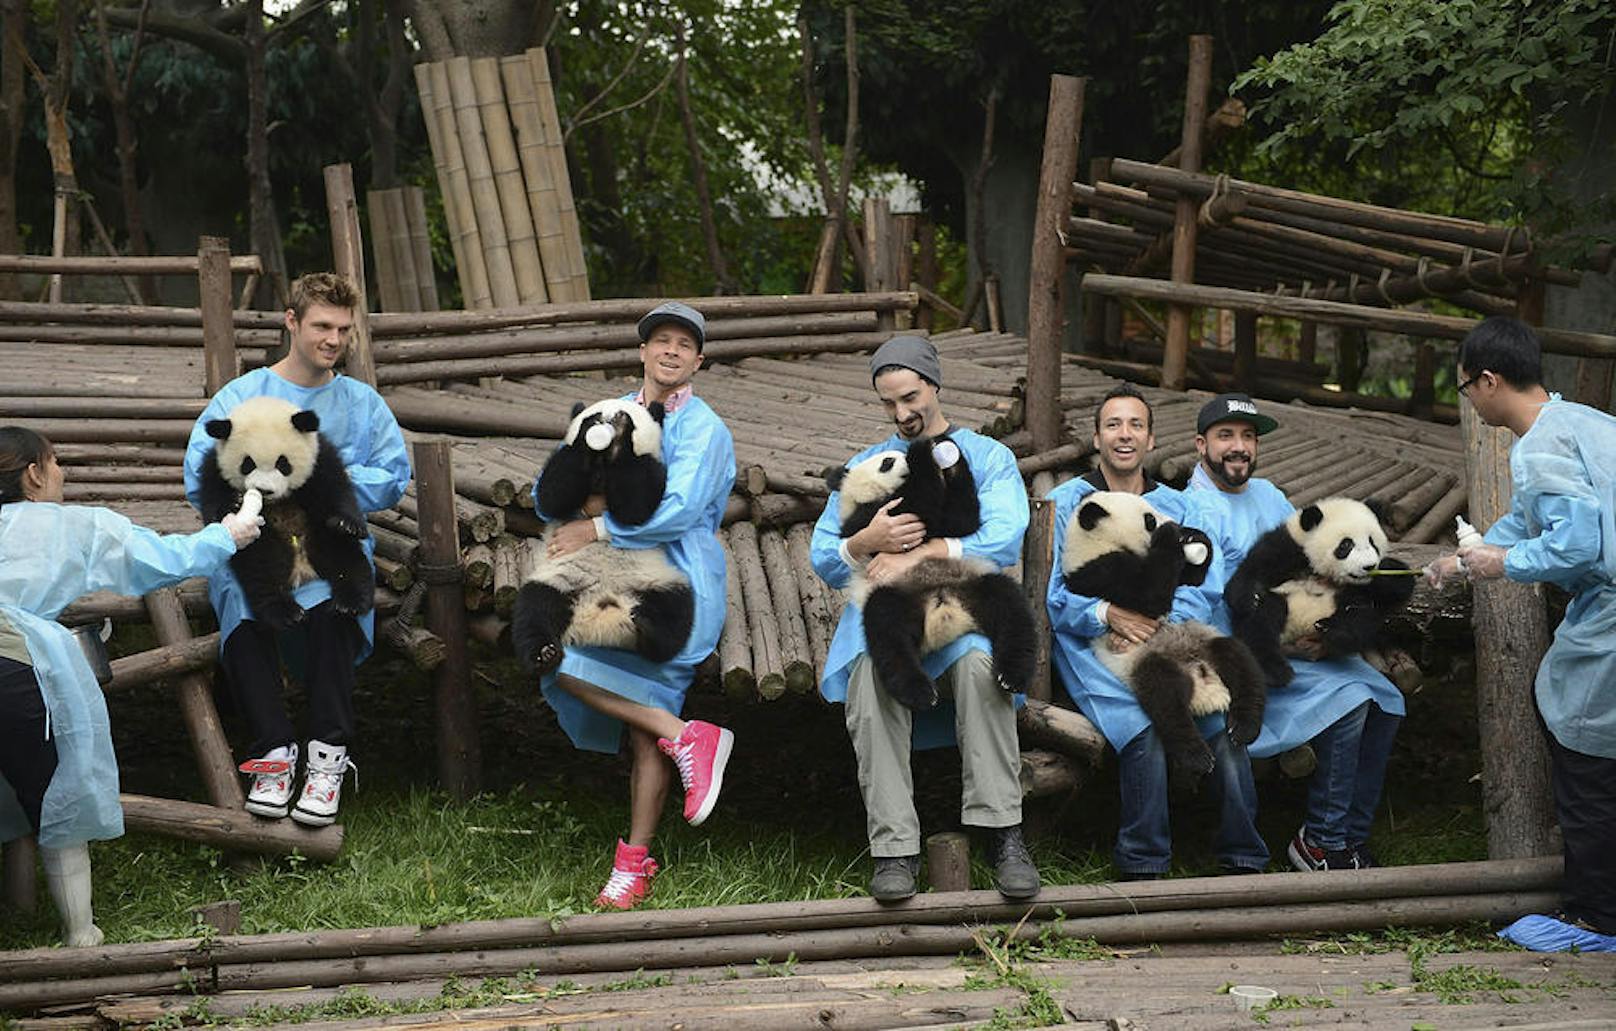 Die Backstreet Boys machen bei ihrer China-Tour Bekanntschaft mit knuffigen Pandas!